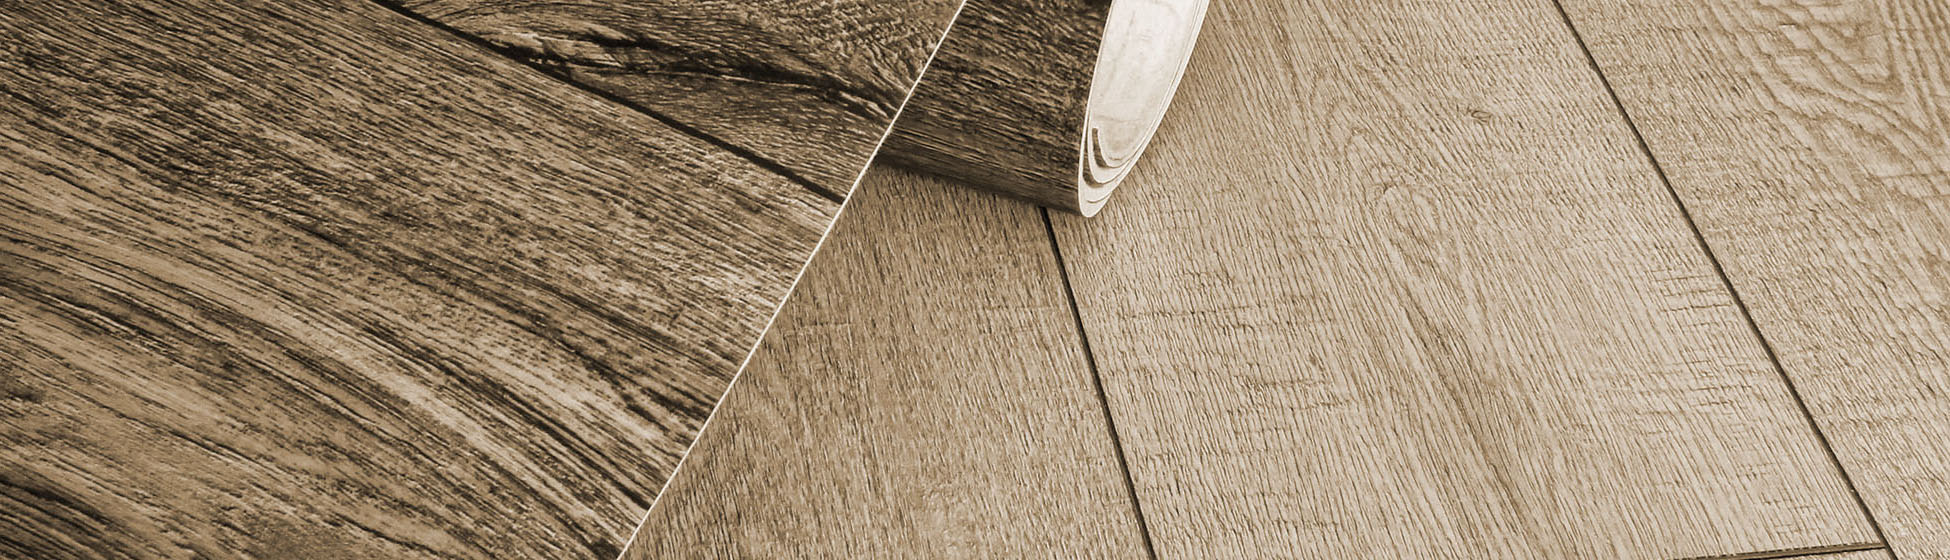 Pose de lino sur plancher bois